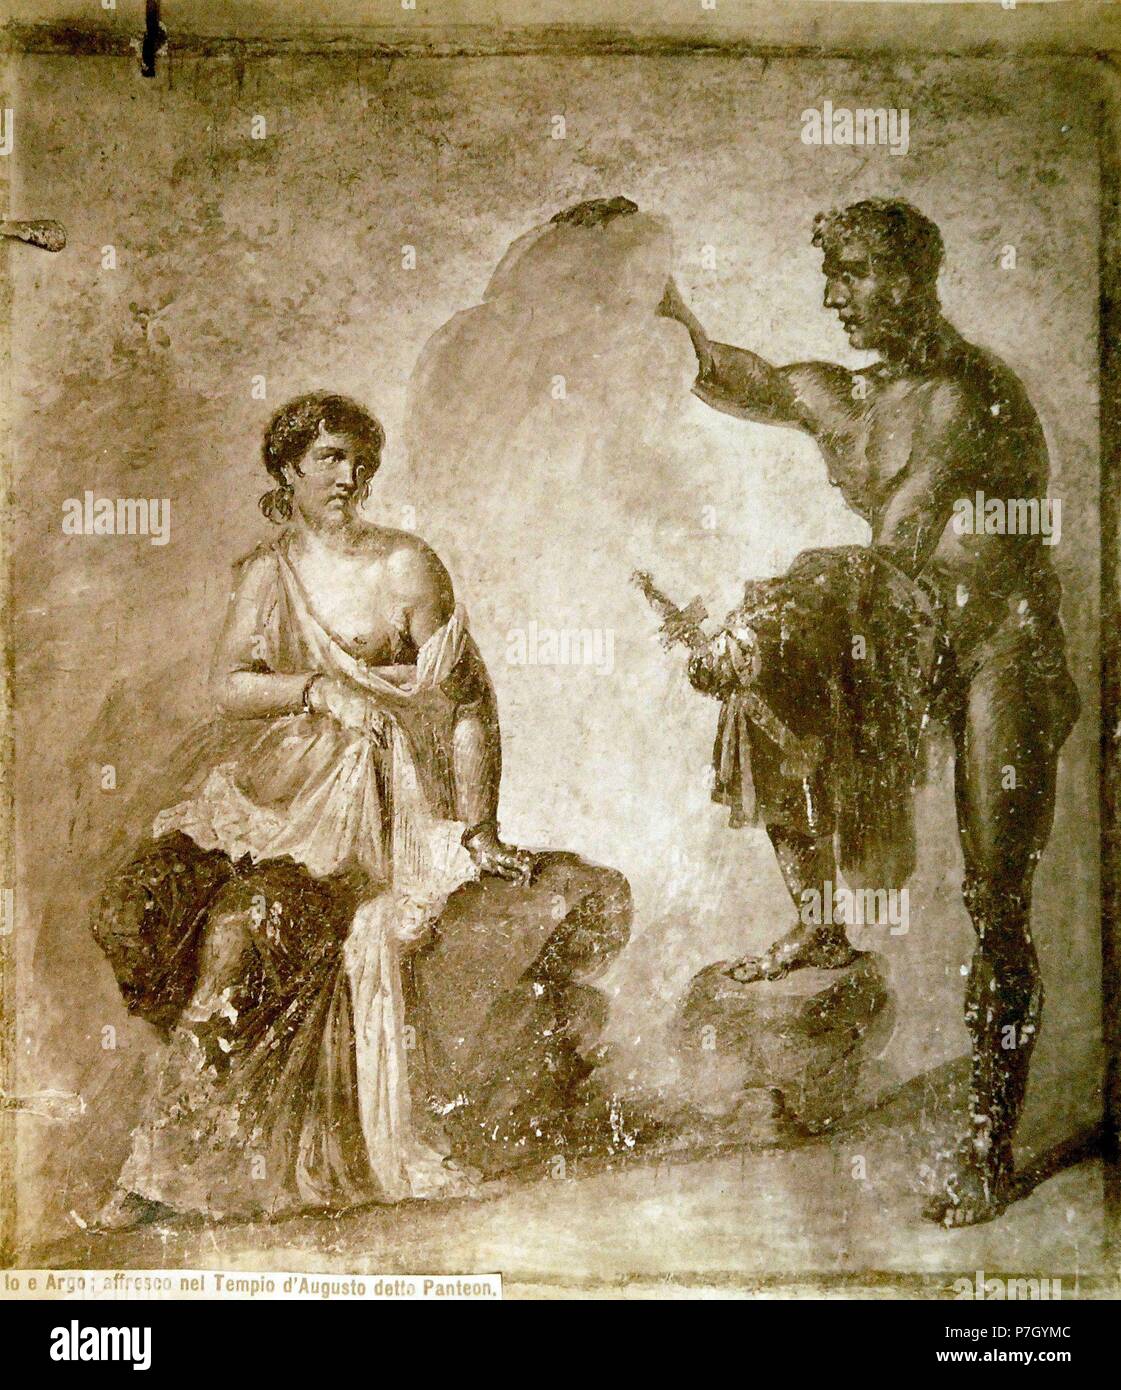 Io e Argo; affresco nel Templo d'Augusto detto Panteon Stock Photo - Alamy